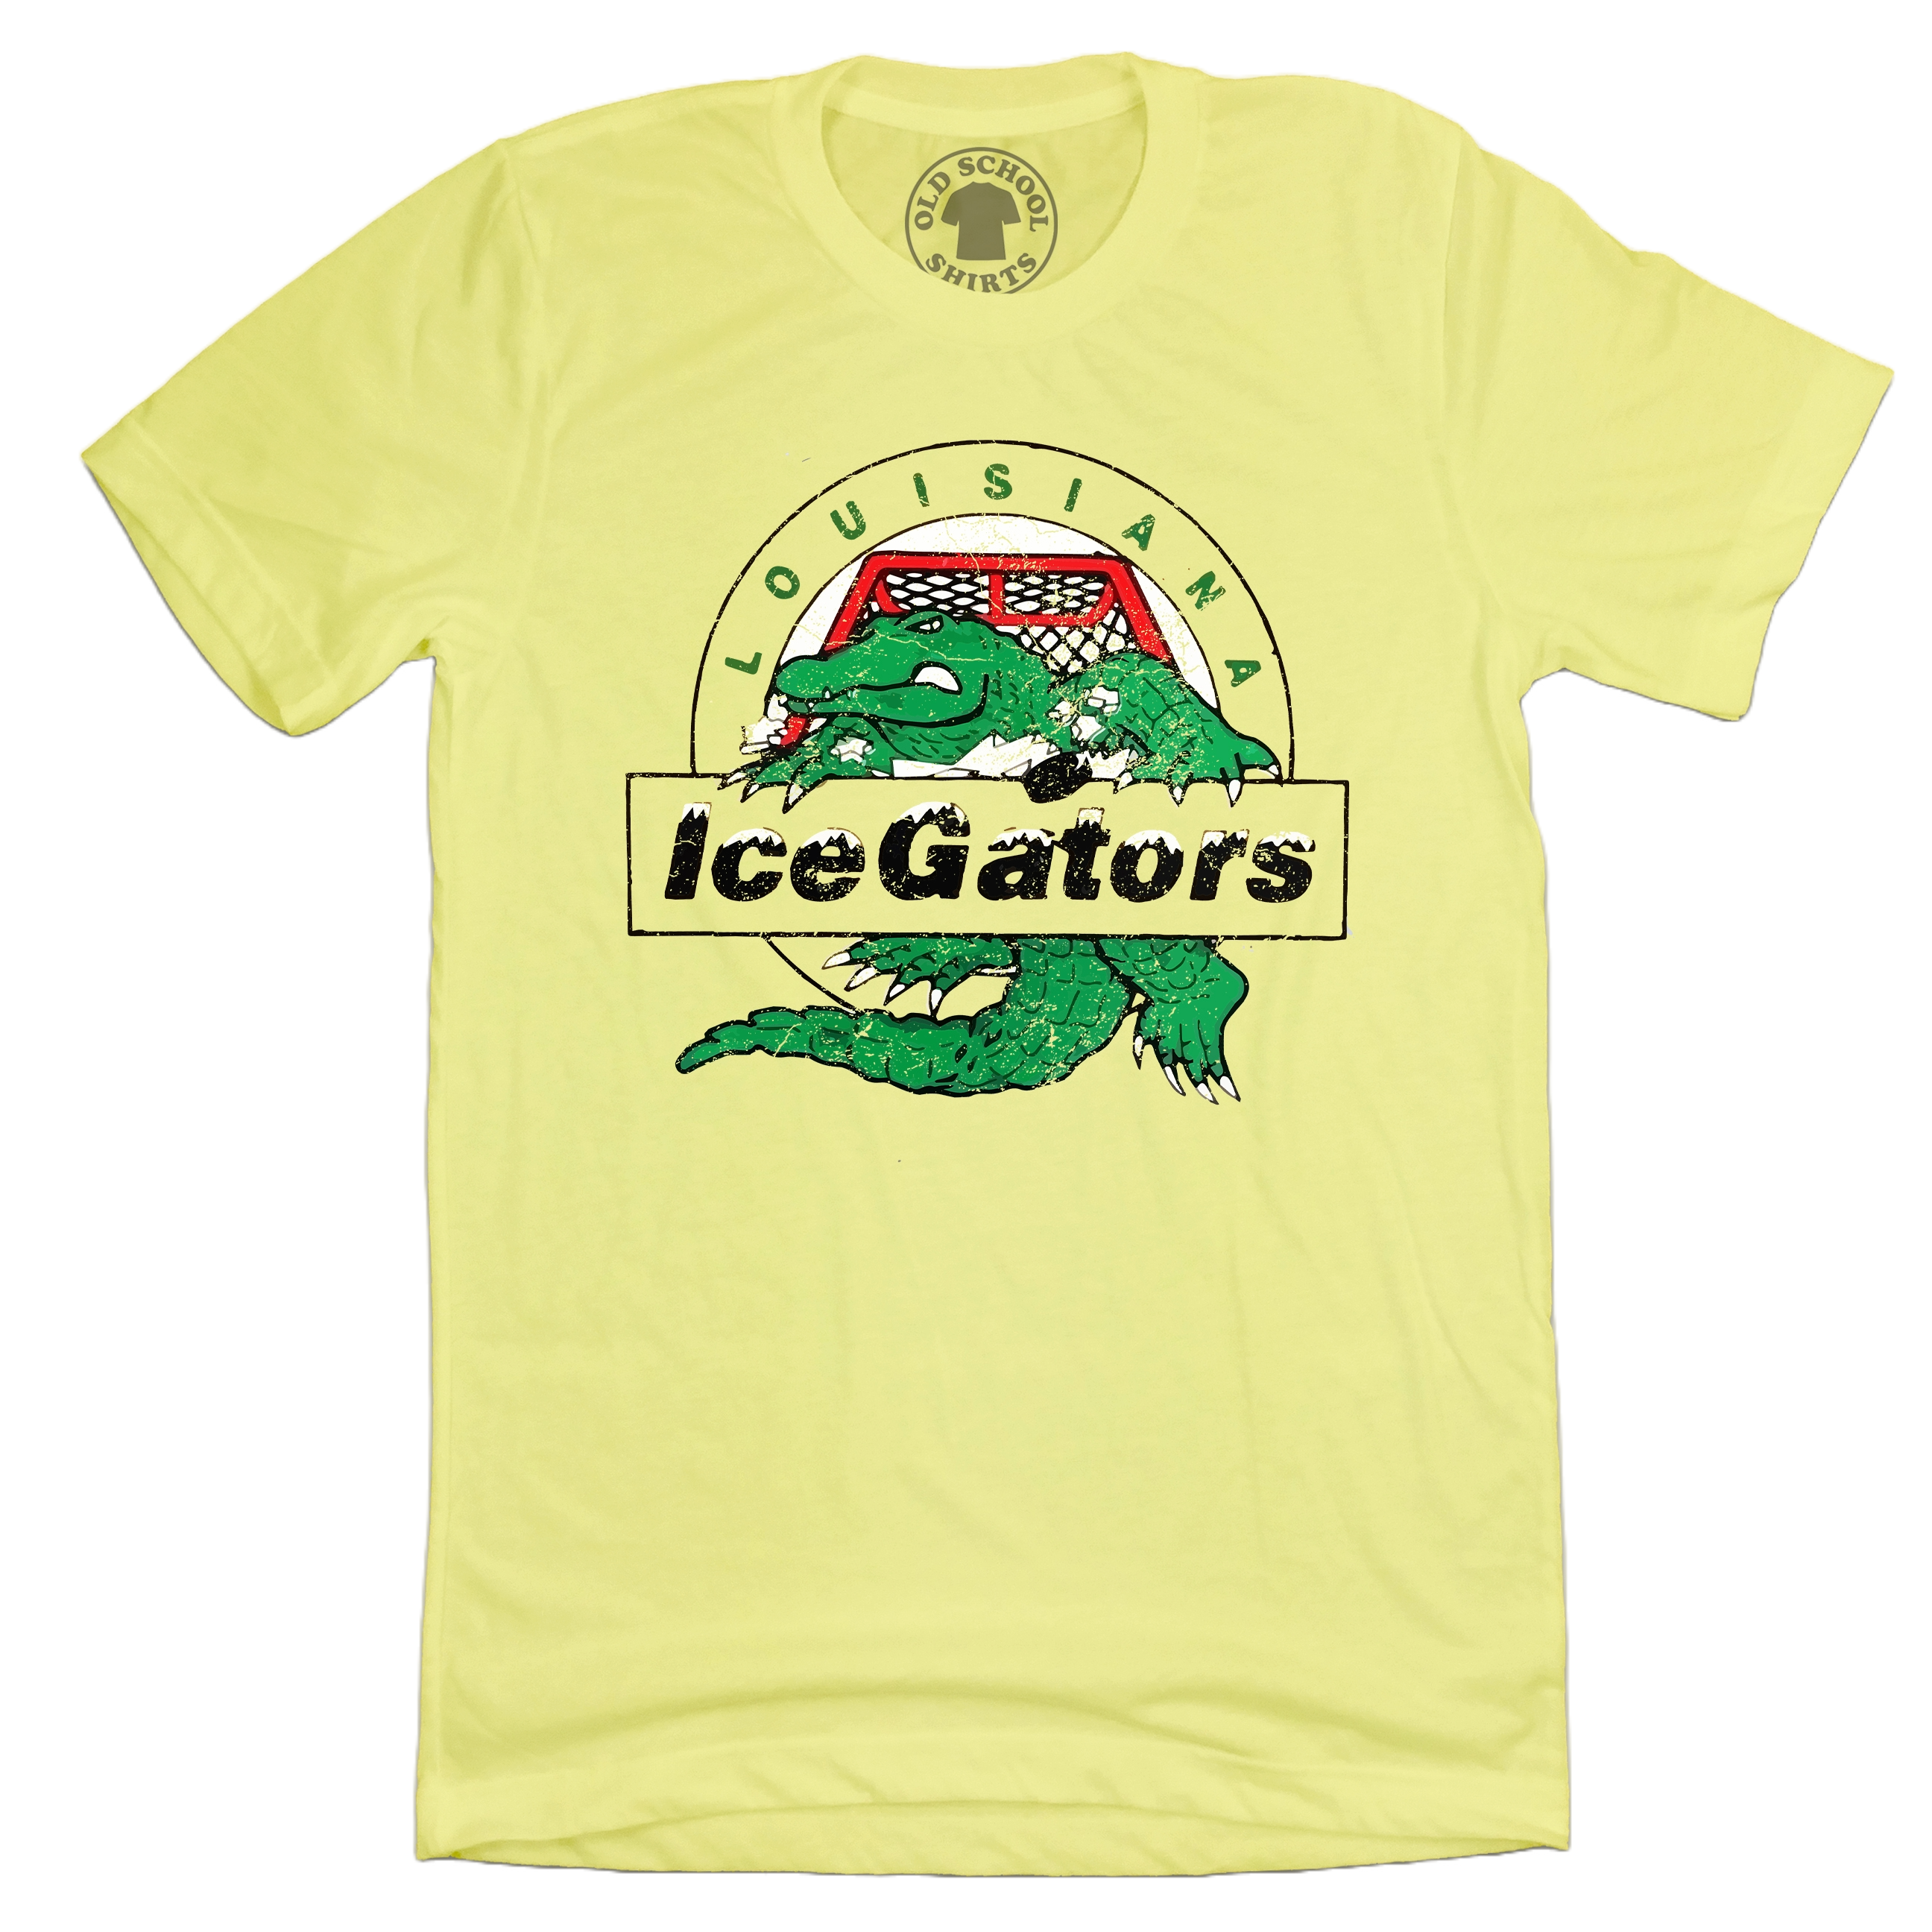 Louisiana IceGators, Vintage Hockey Tees